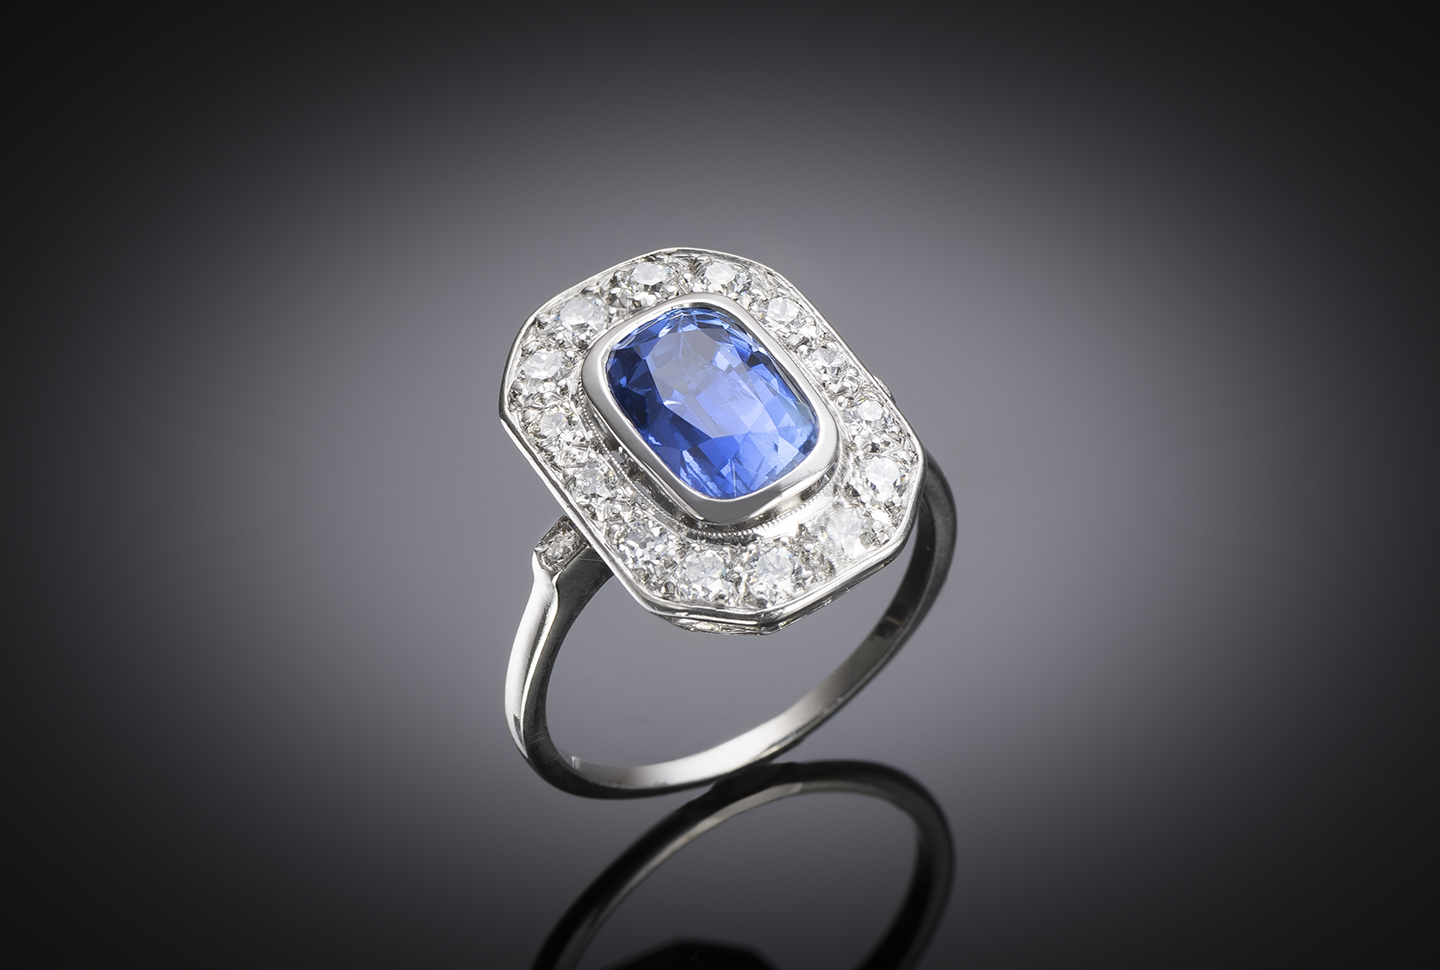 Bague Art déco vers 1935, Glannes R. ancienne Maison Duran, saphir naturel non chauffé bleu intense de 4 carats (certificat laboratoire) et diamants-1